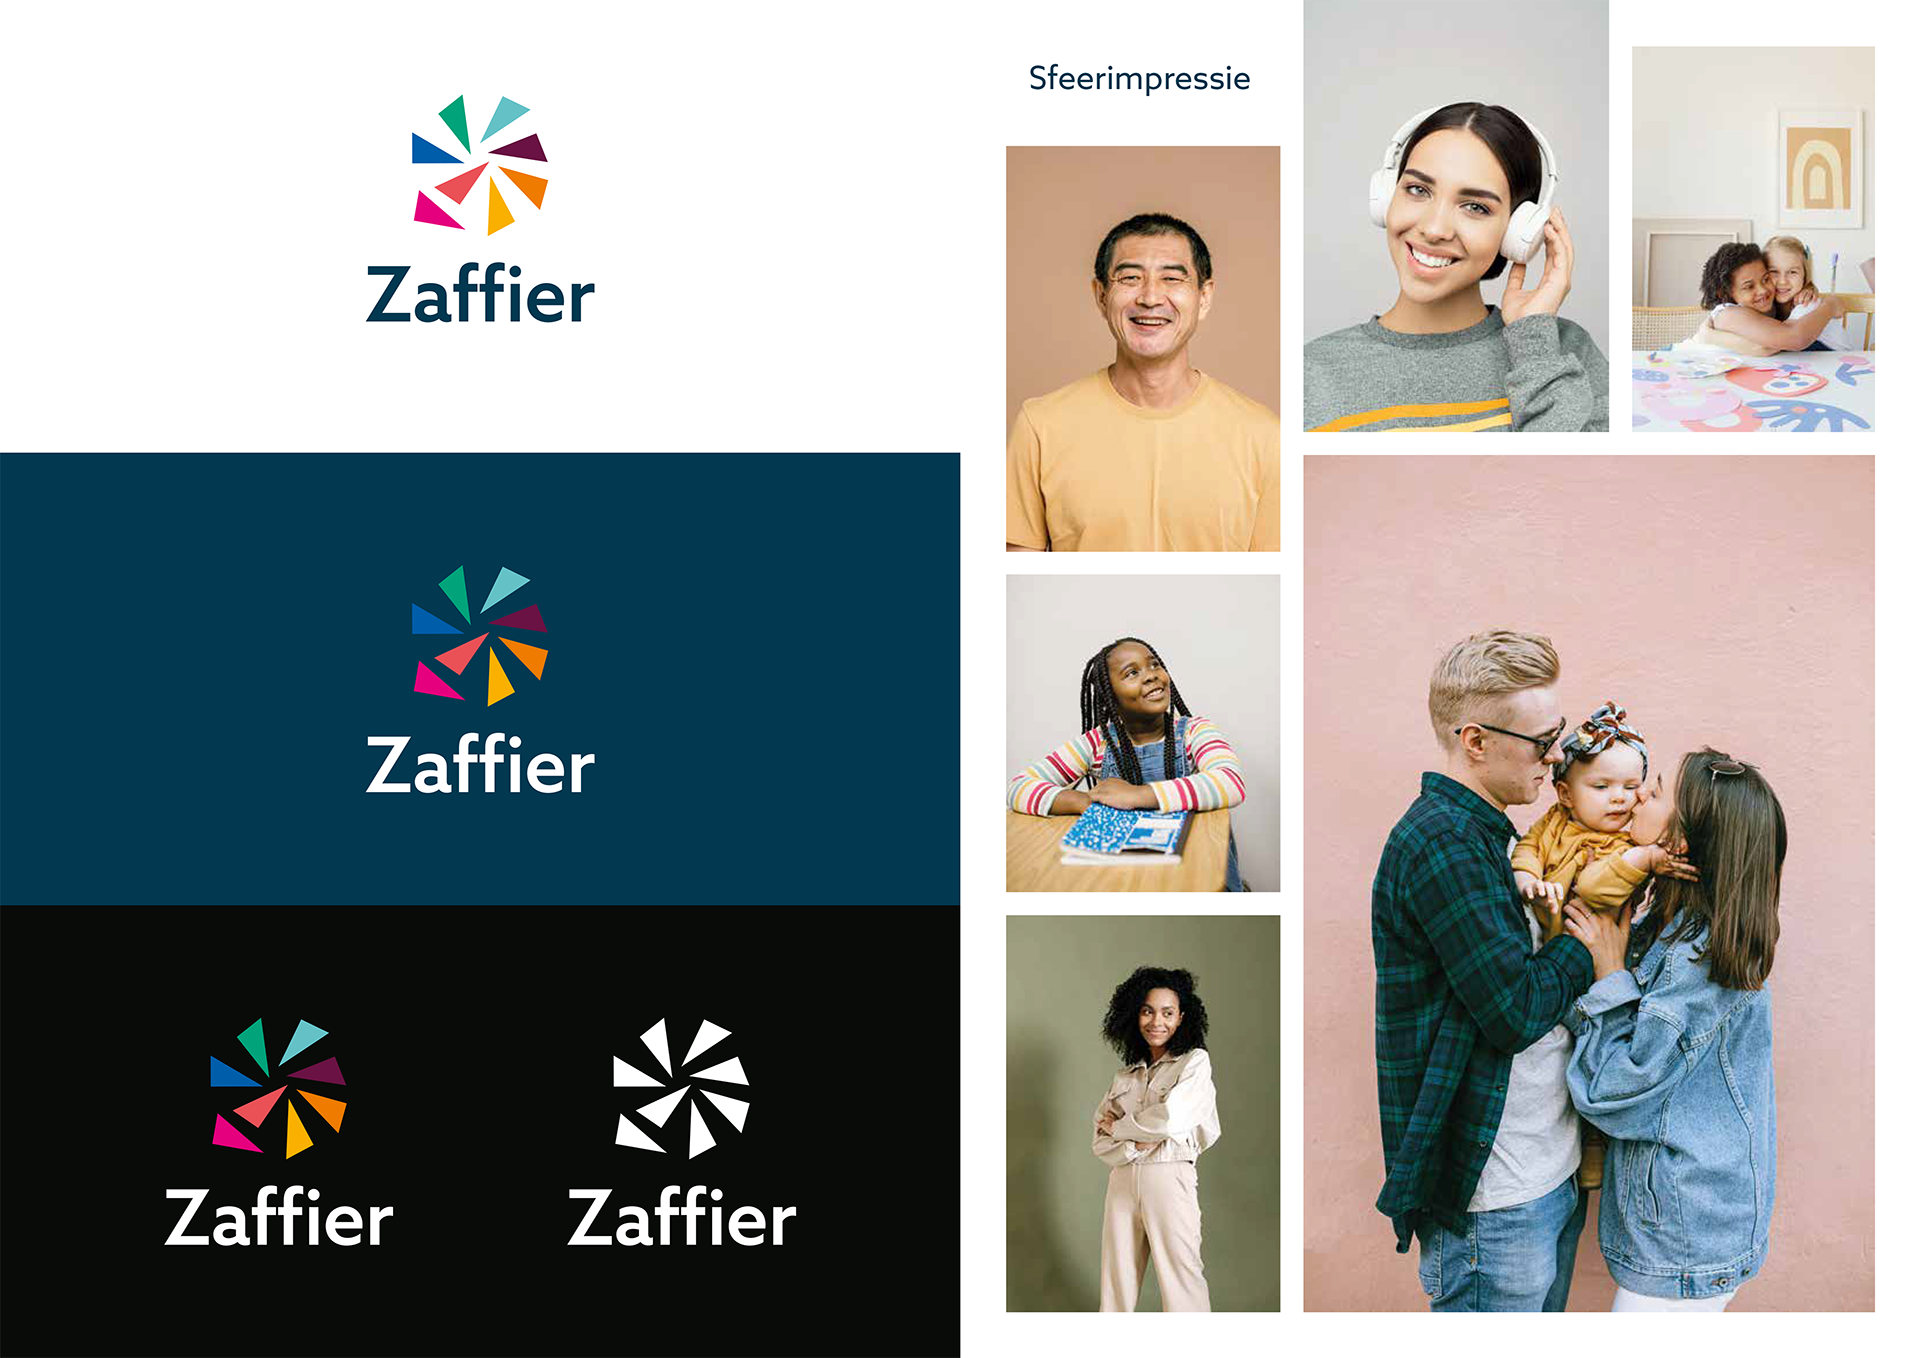 nieuw logo en nieuwe huisstijl voor Zaffier na fusie